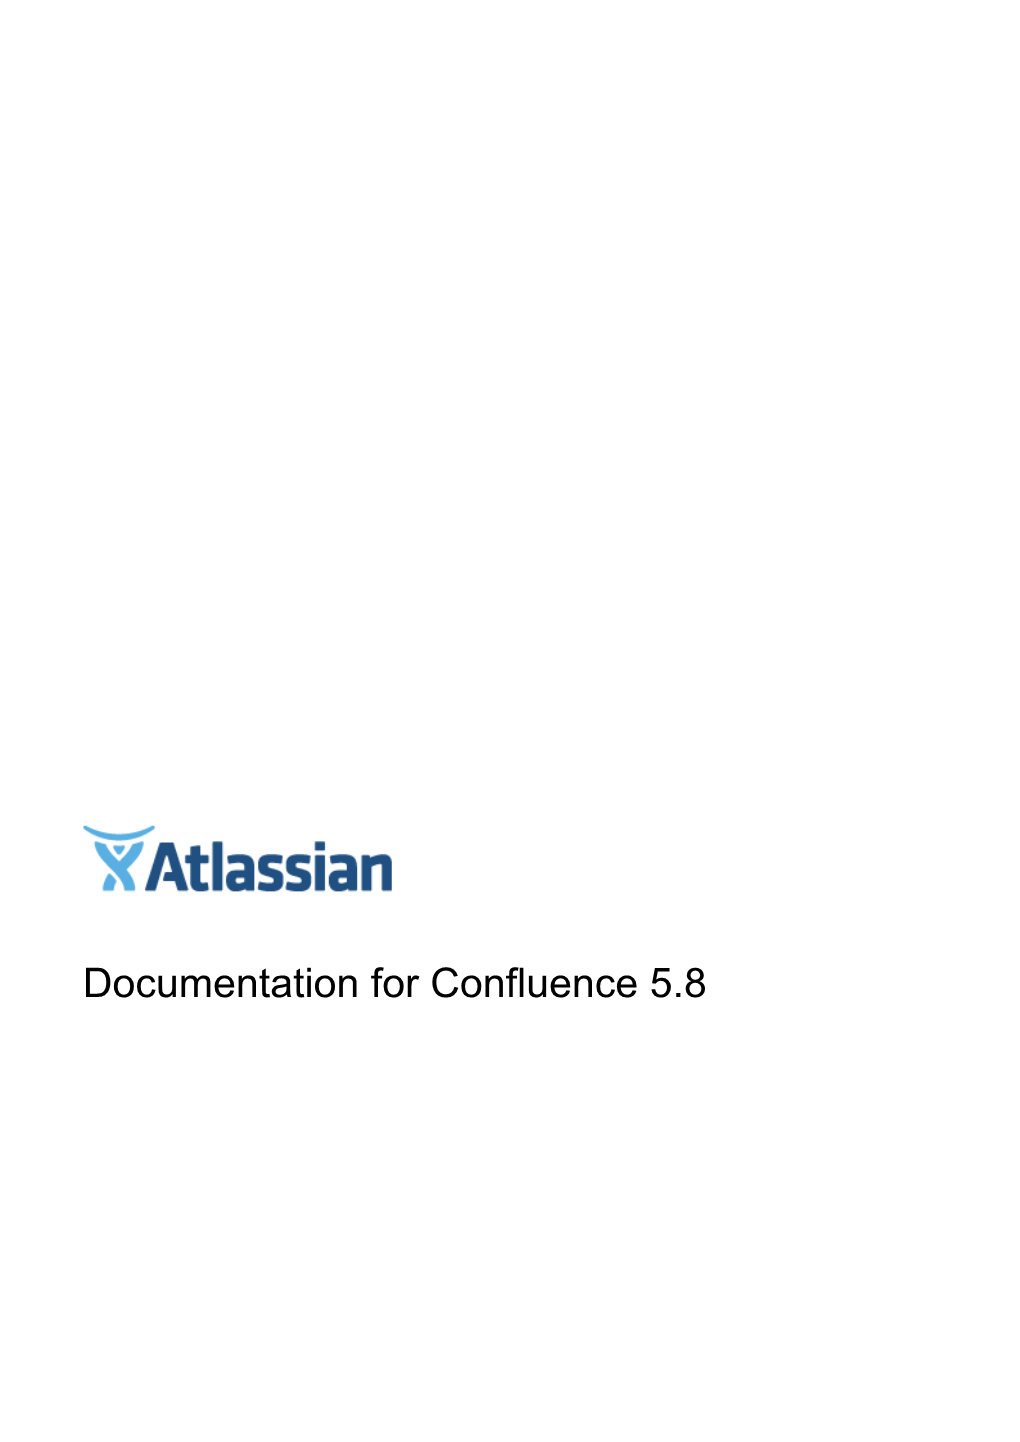 Documentation for Confluence 5.8 Confluence 5.8 Documentation 2